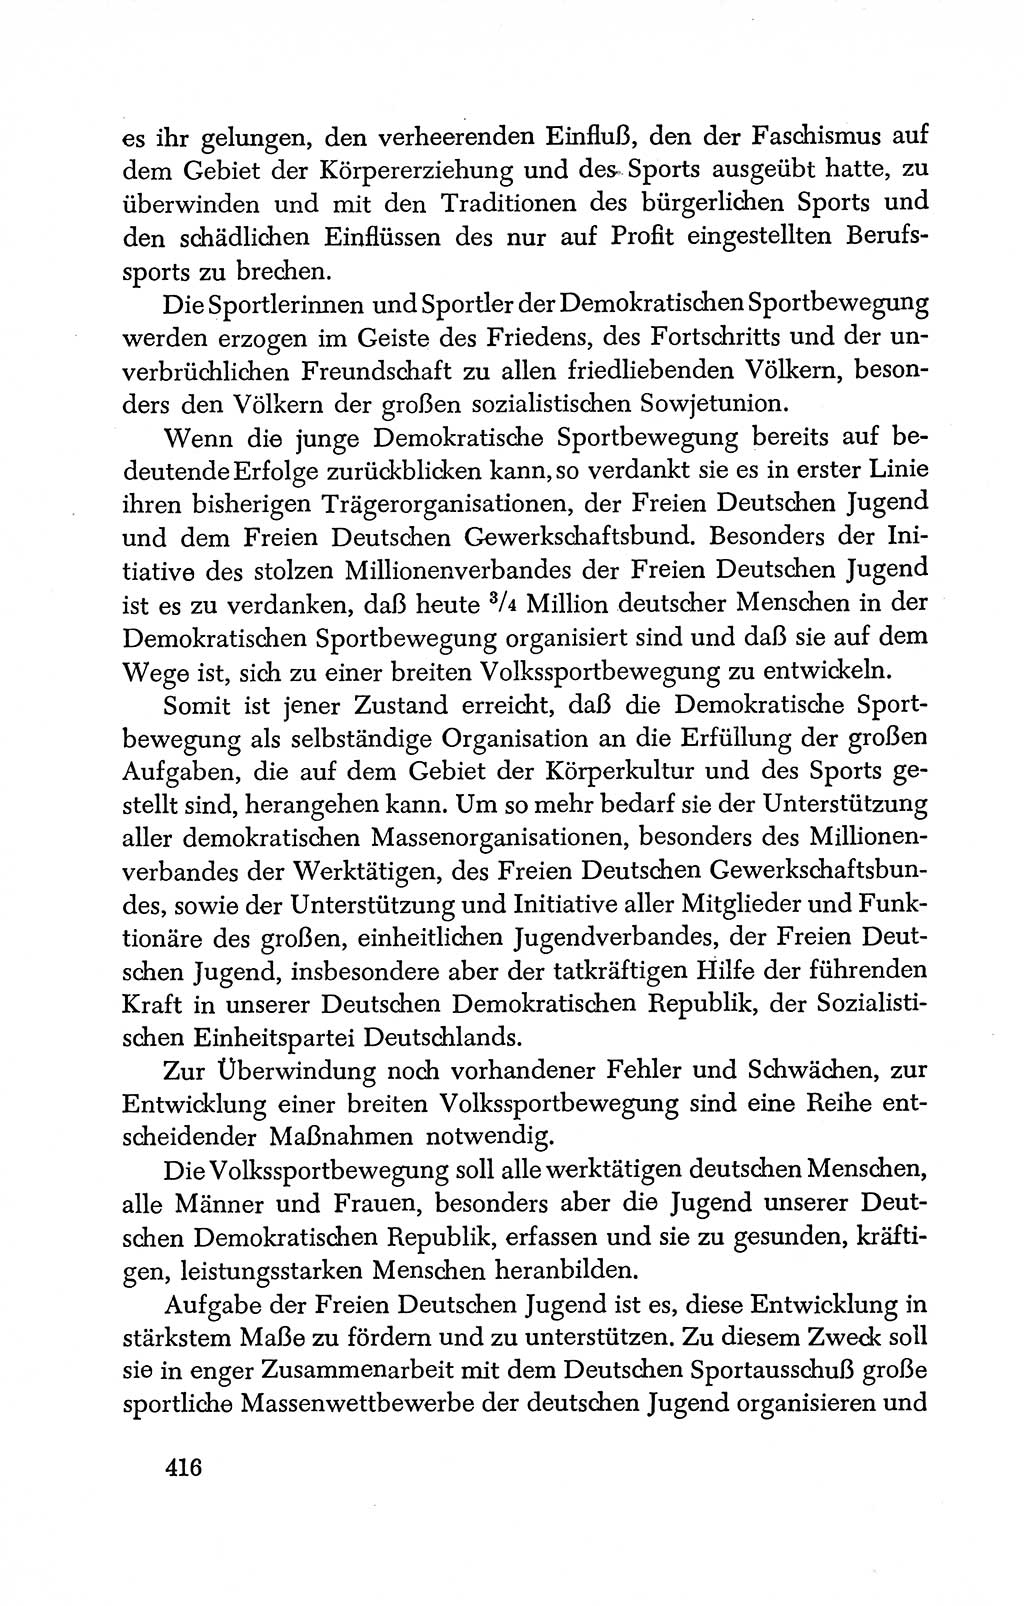 Dokumente der Sozialistischen Einheitspartei Deutschlands (SED) [Deutsche Demokratische Republik (DDR)] 1950-1952, Seite 416 (Dok. SED DDR 1950-1952, S. 416)